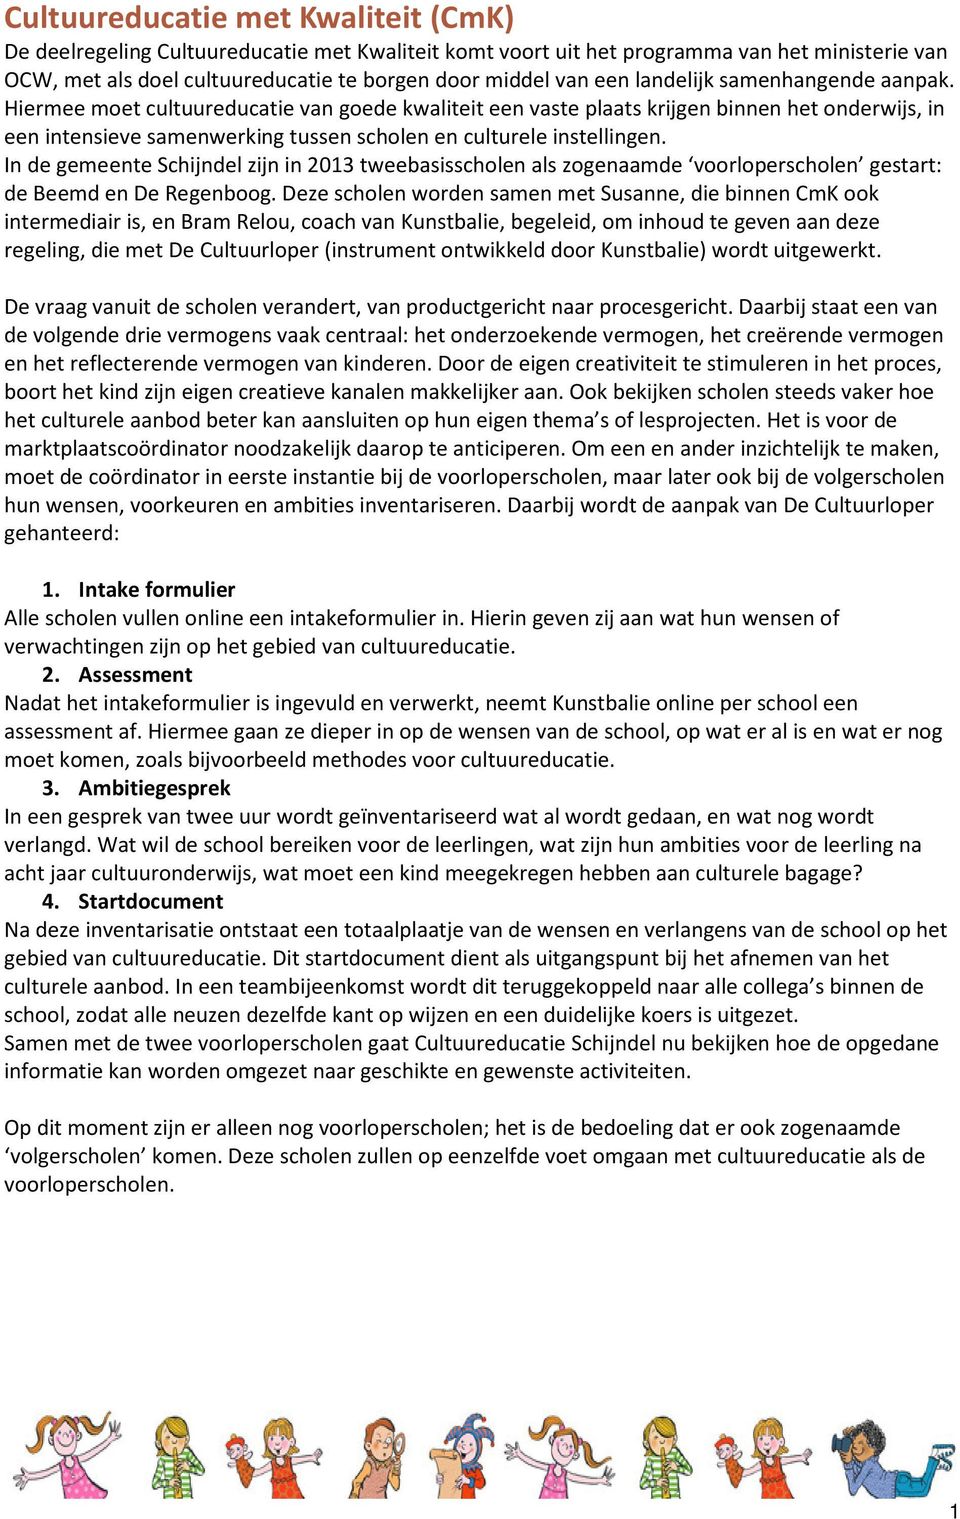 In de gemeente Schijndel zijn in 2013 tweebasisscholen als zogenaamde voorloperscholen gestart: de Beemd en De Regenboog.